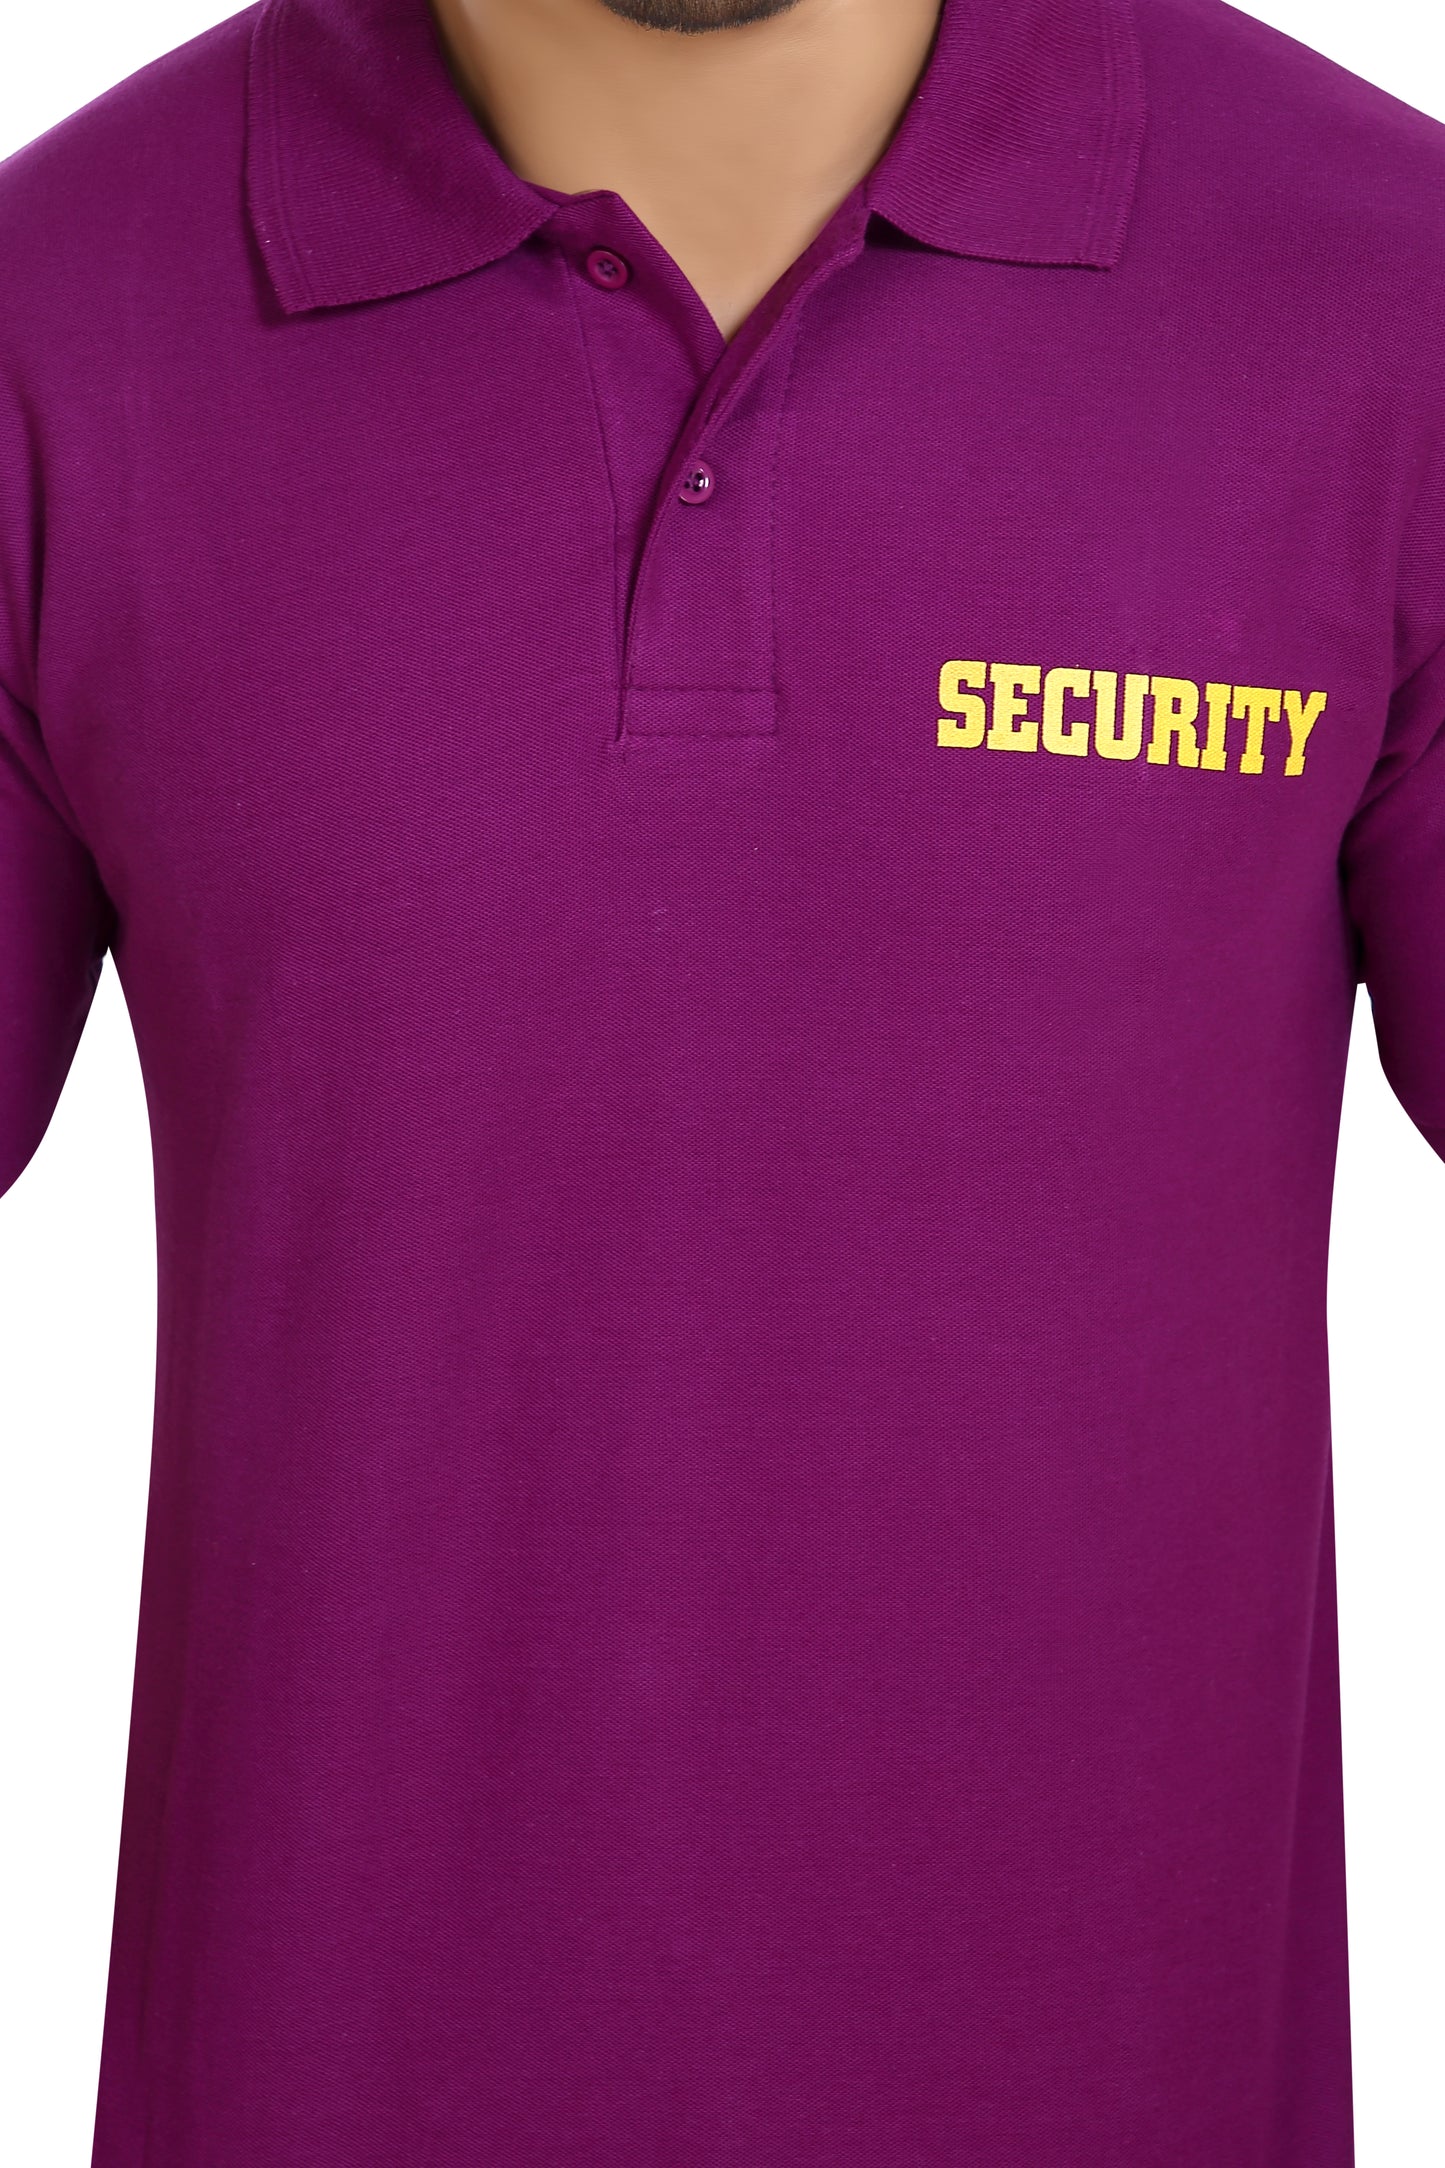 Security Guard 100% Cotton T-Shirt - Purple